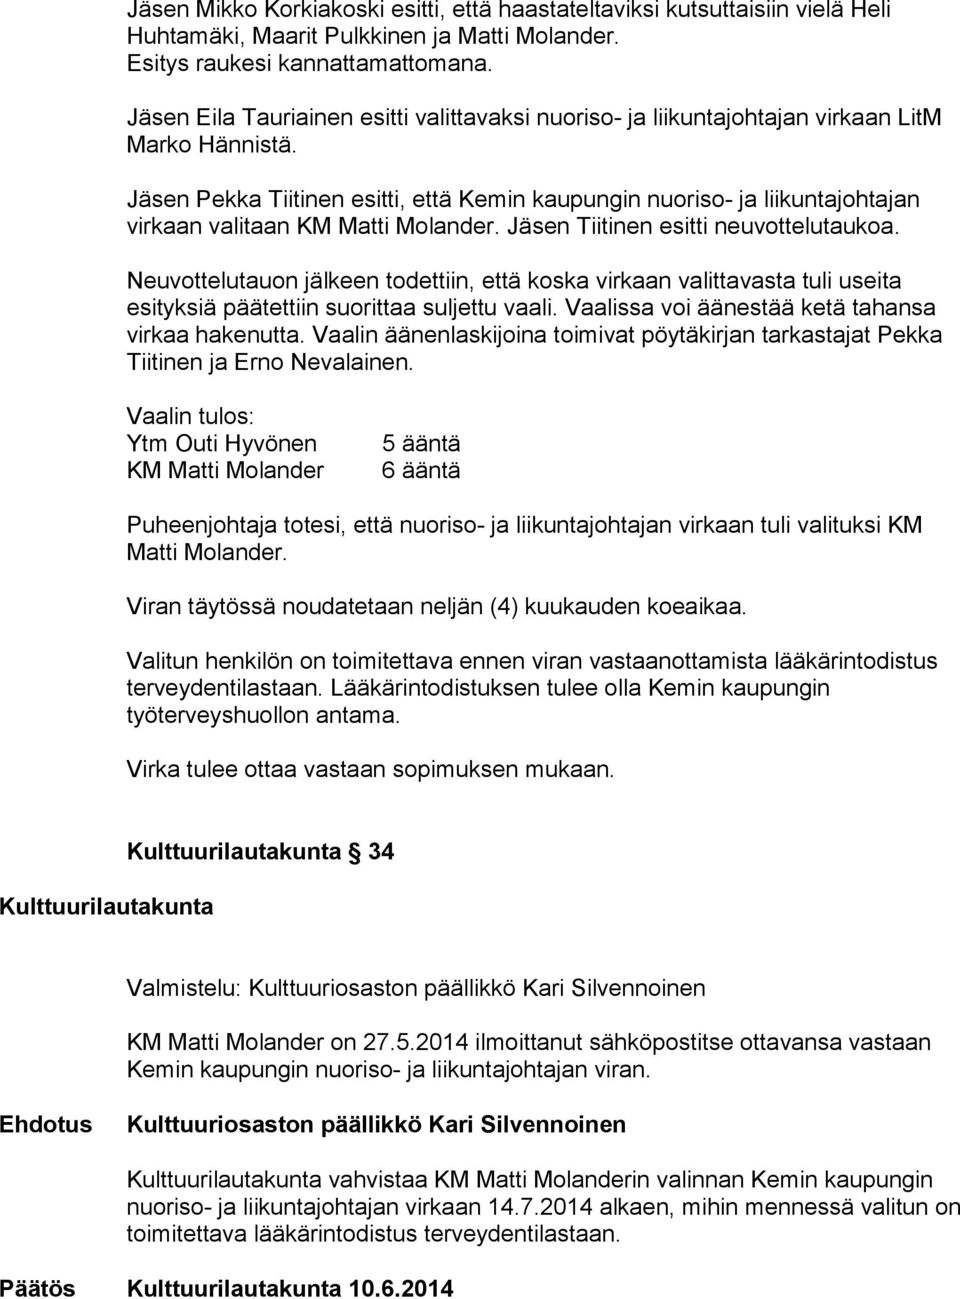 Jäsen Pekka Tiitinen esitti, että Kemin kaupungin nuoriso- ja liikuntajohtajan virkaan valitaan KM Matti Molander. Jäsen Tiitinen esitti neuvottelutaukoa.